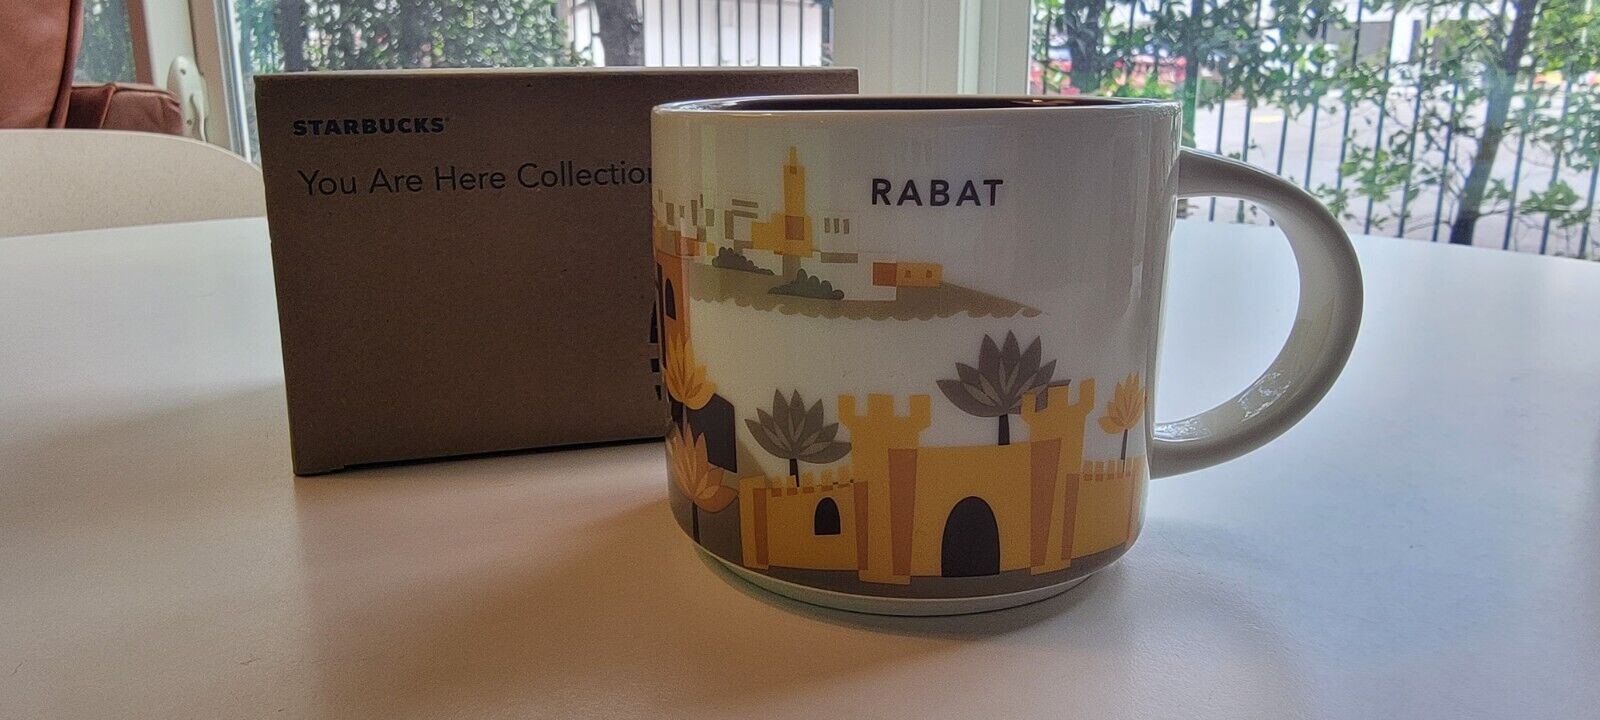 Starbucks RABAT Morocco - You Are Here Collection - Coffee Mug Cup 14oz RARE